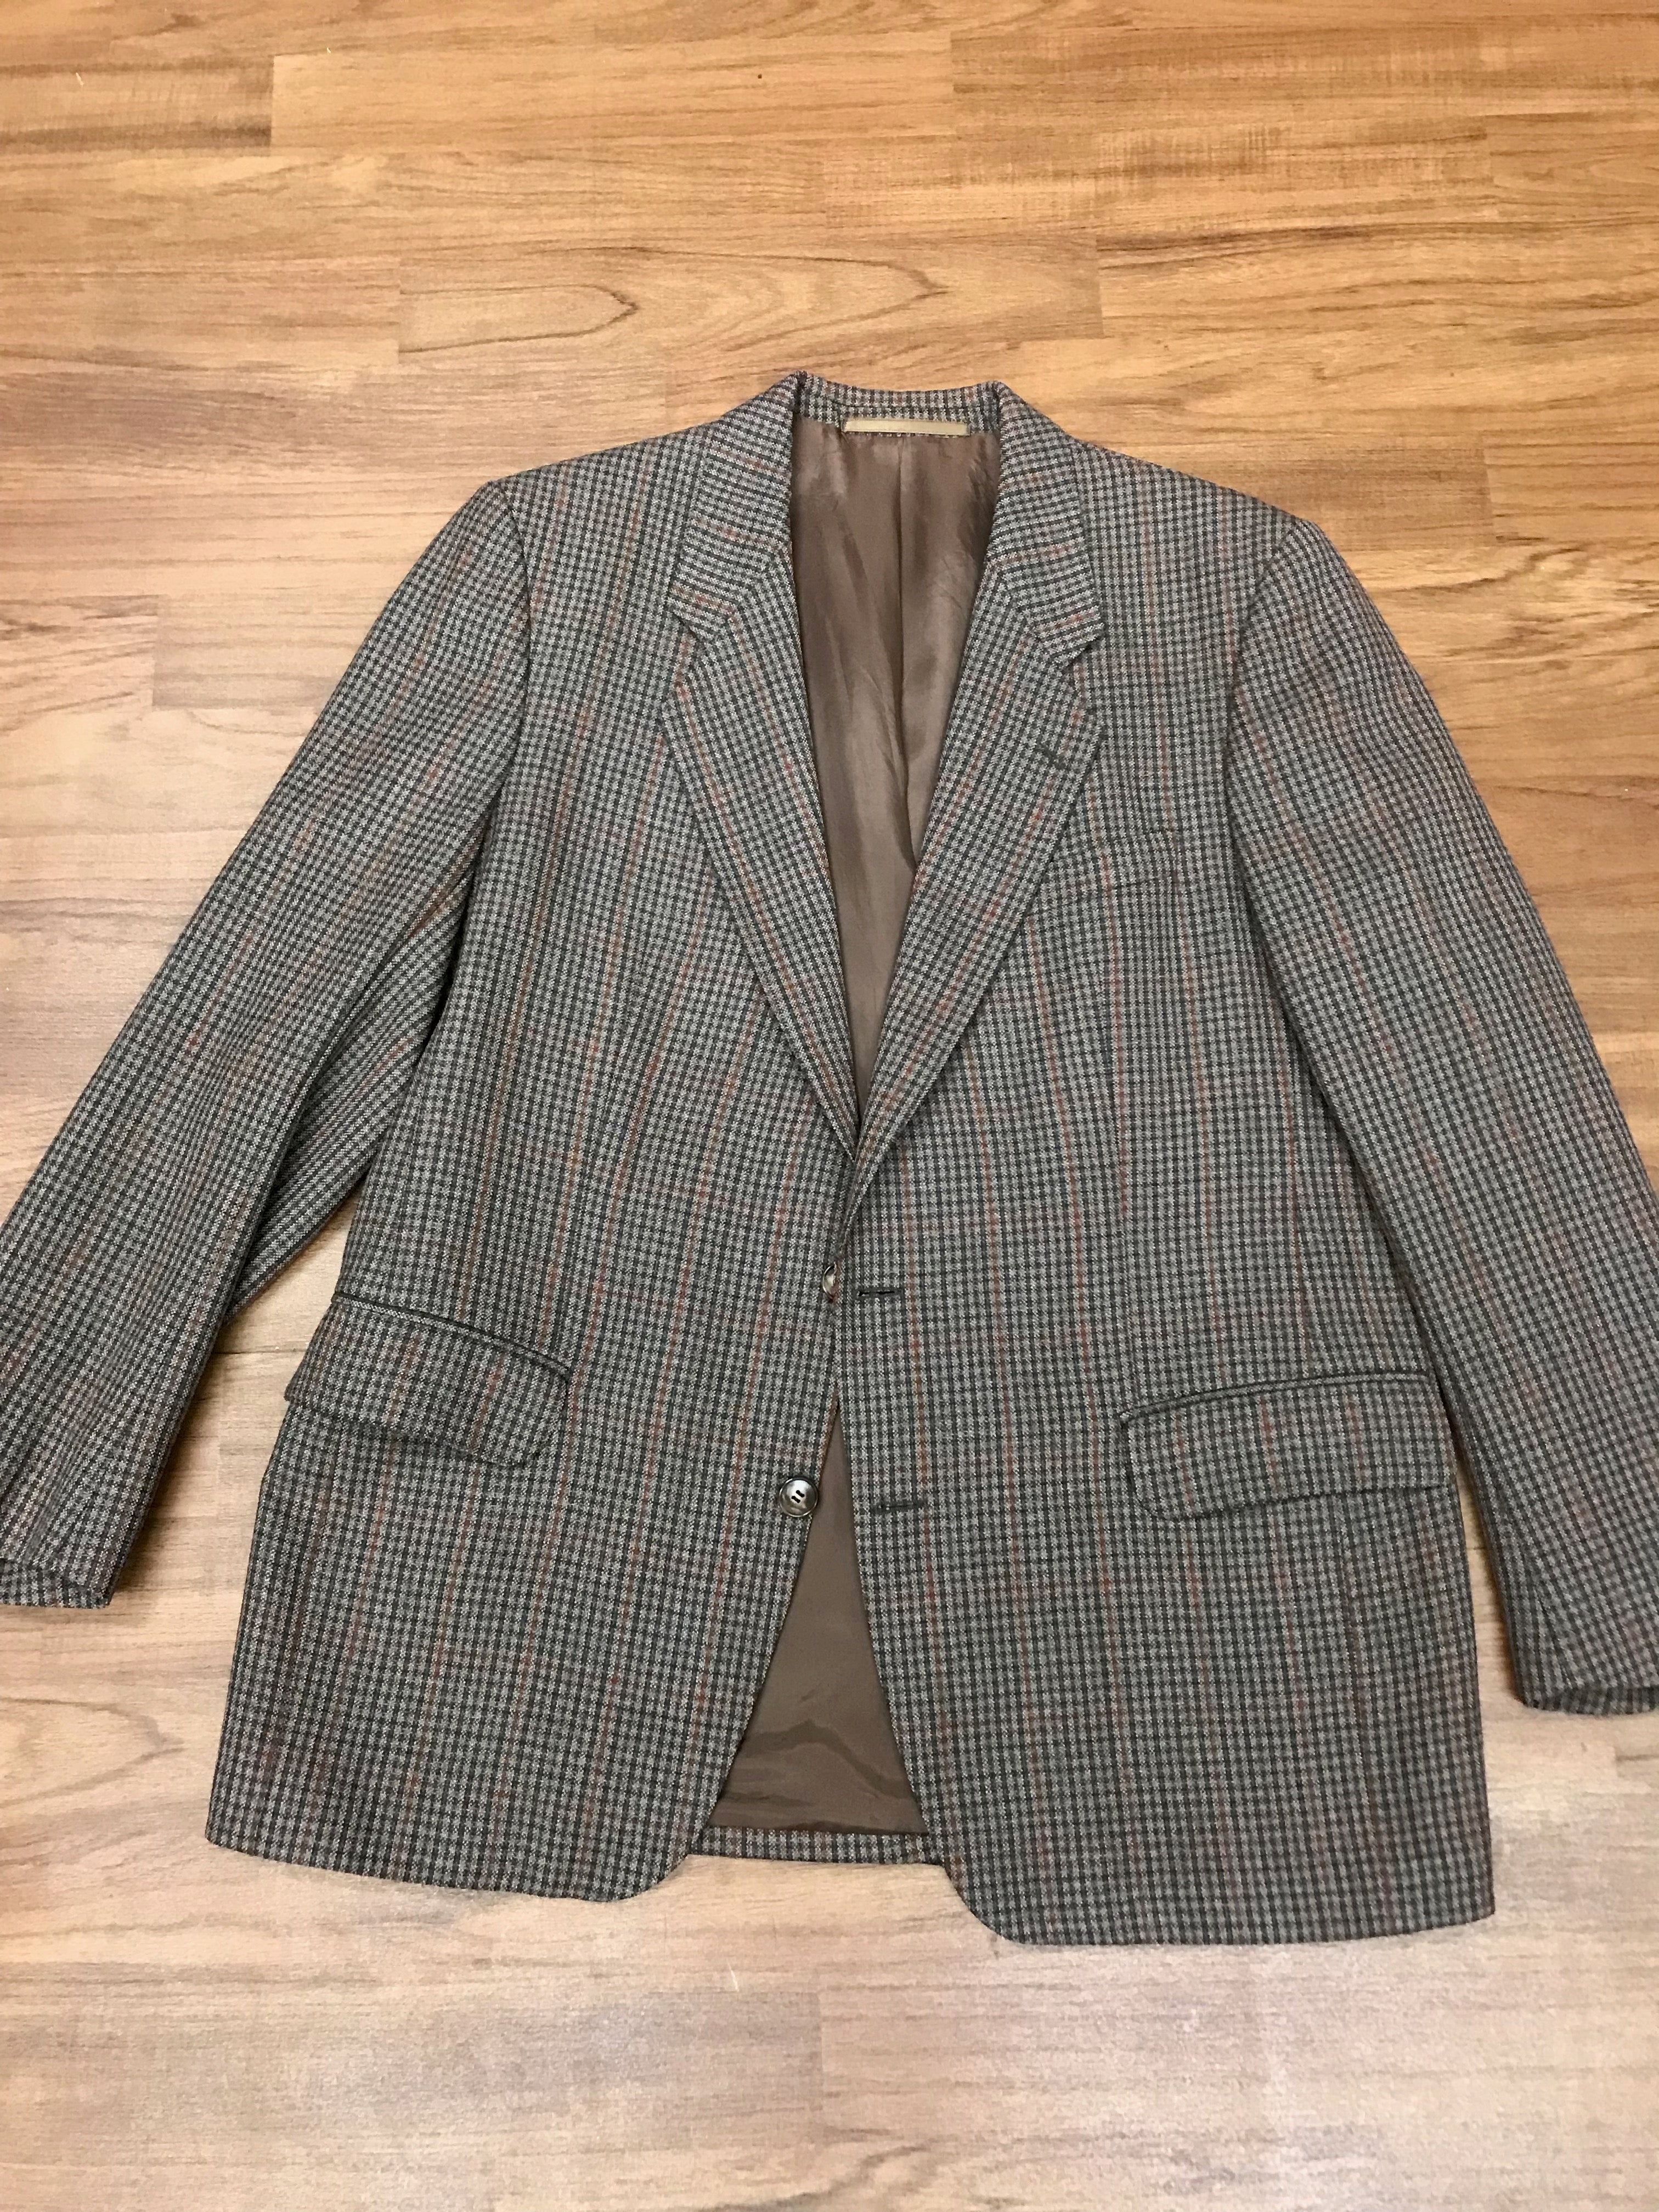 Karierte Herrenjacke Vintage Tweed Sakko Blazer  Gr.48 (nur das Sakko)